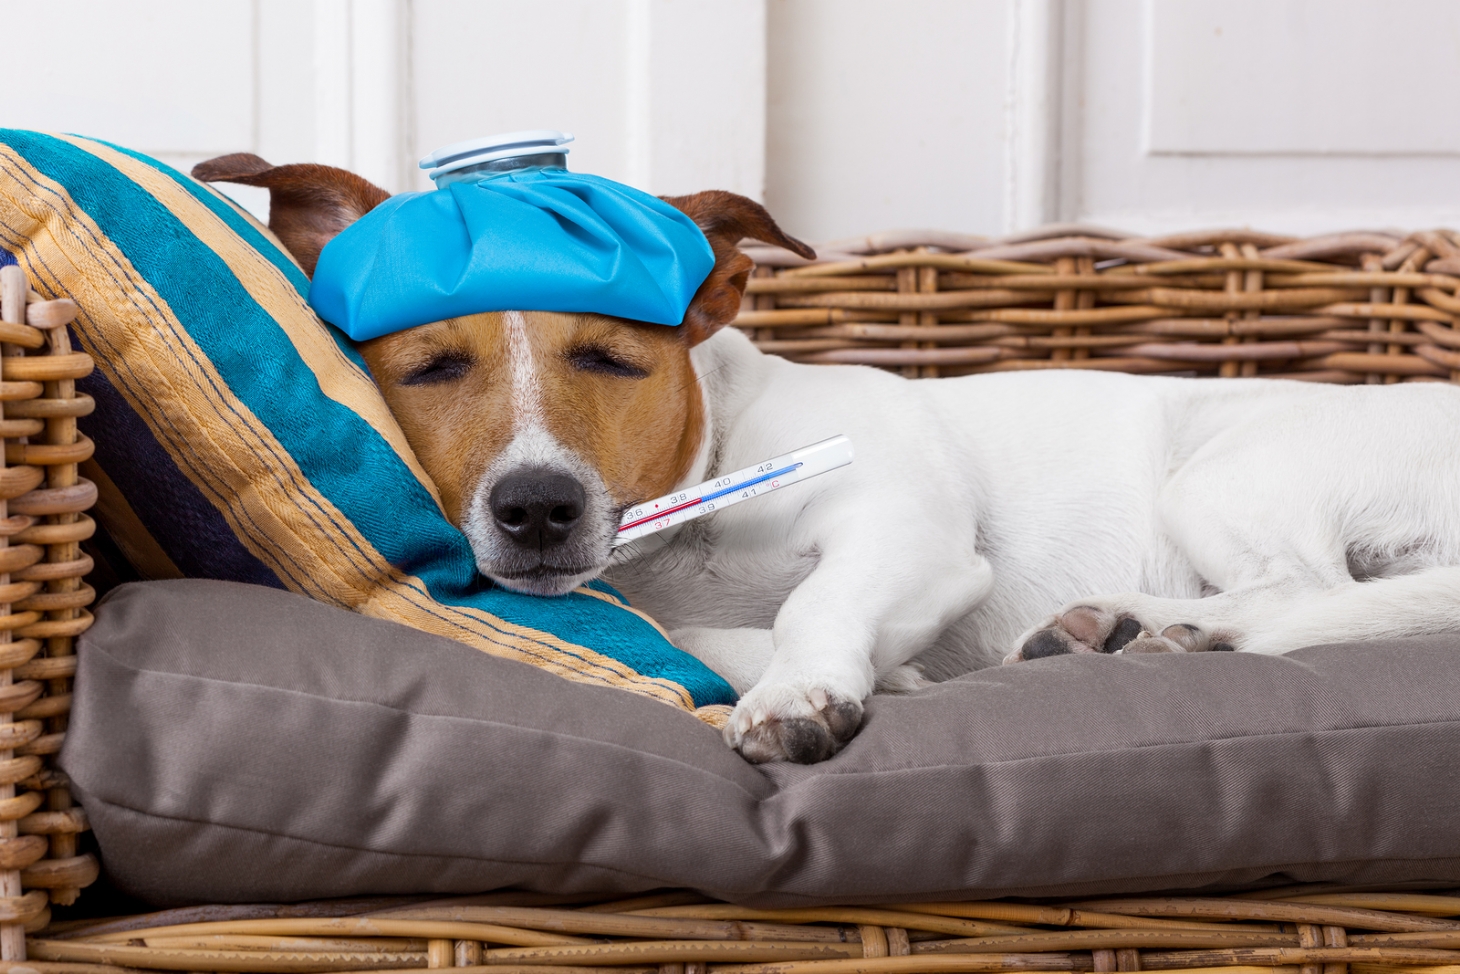 Tosse e espirros podem ser sinais de gripe canina | Jornal da Orla